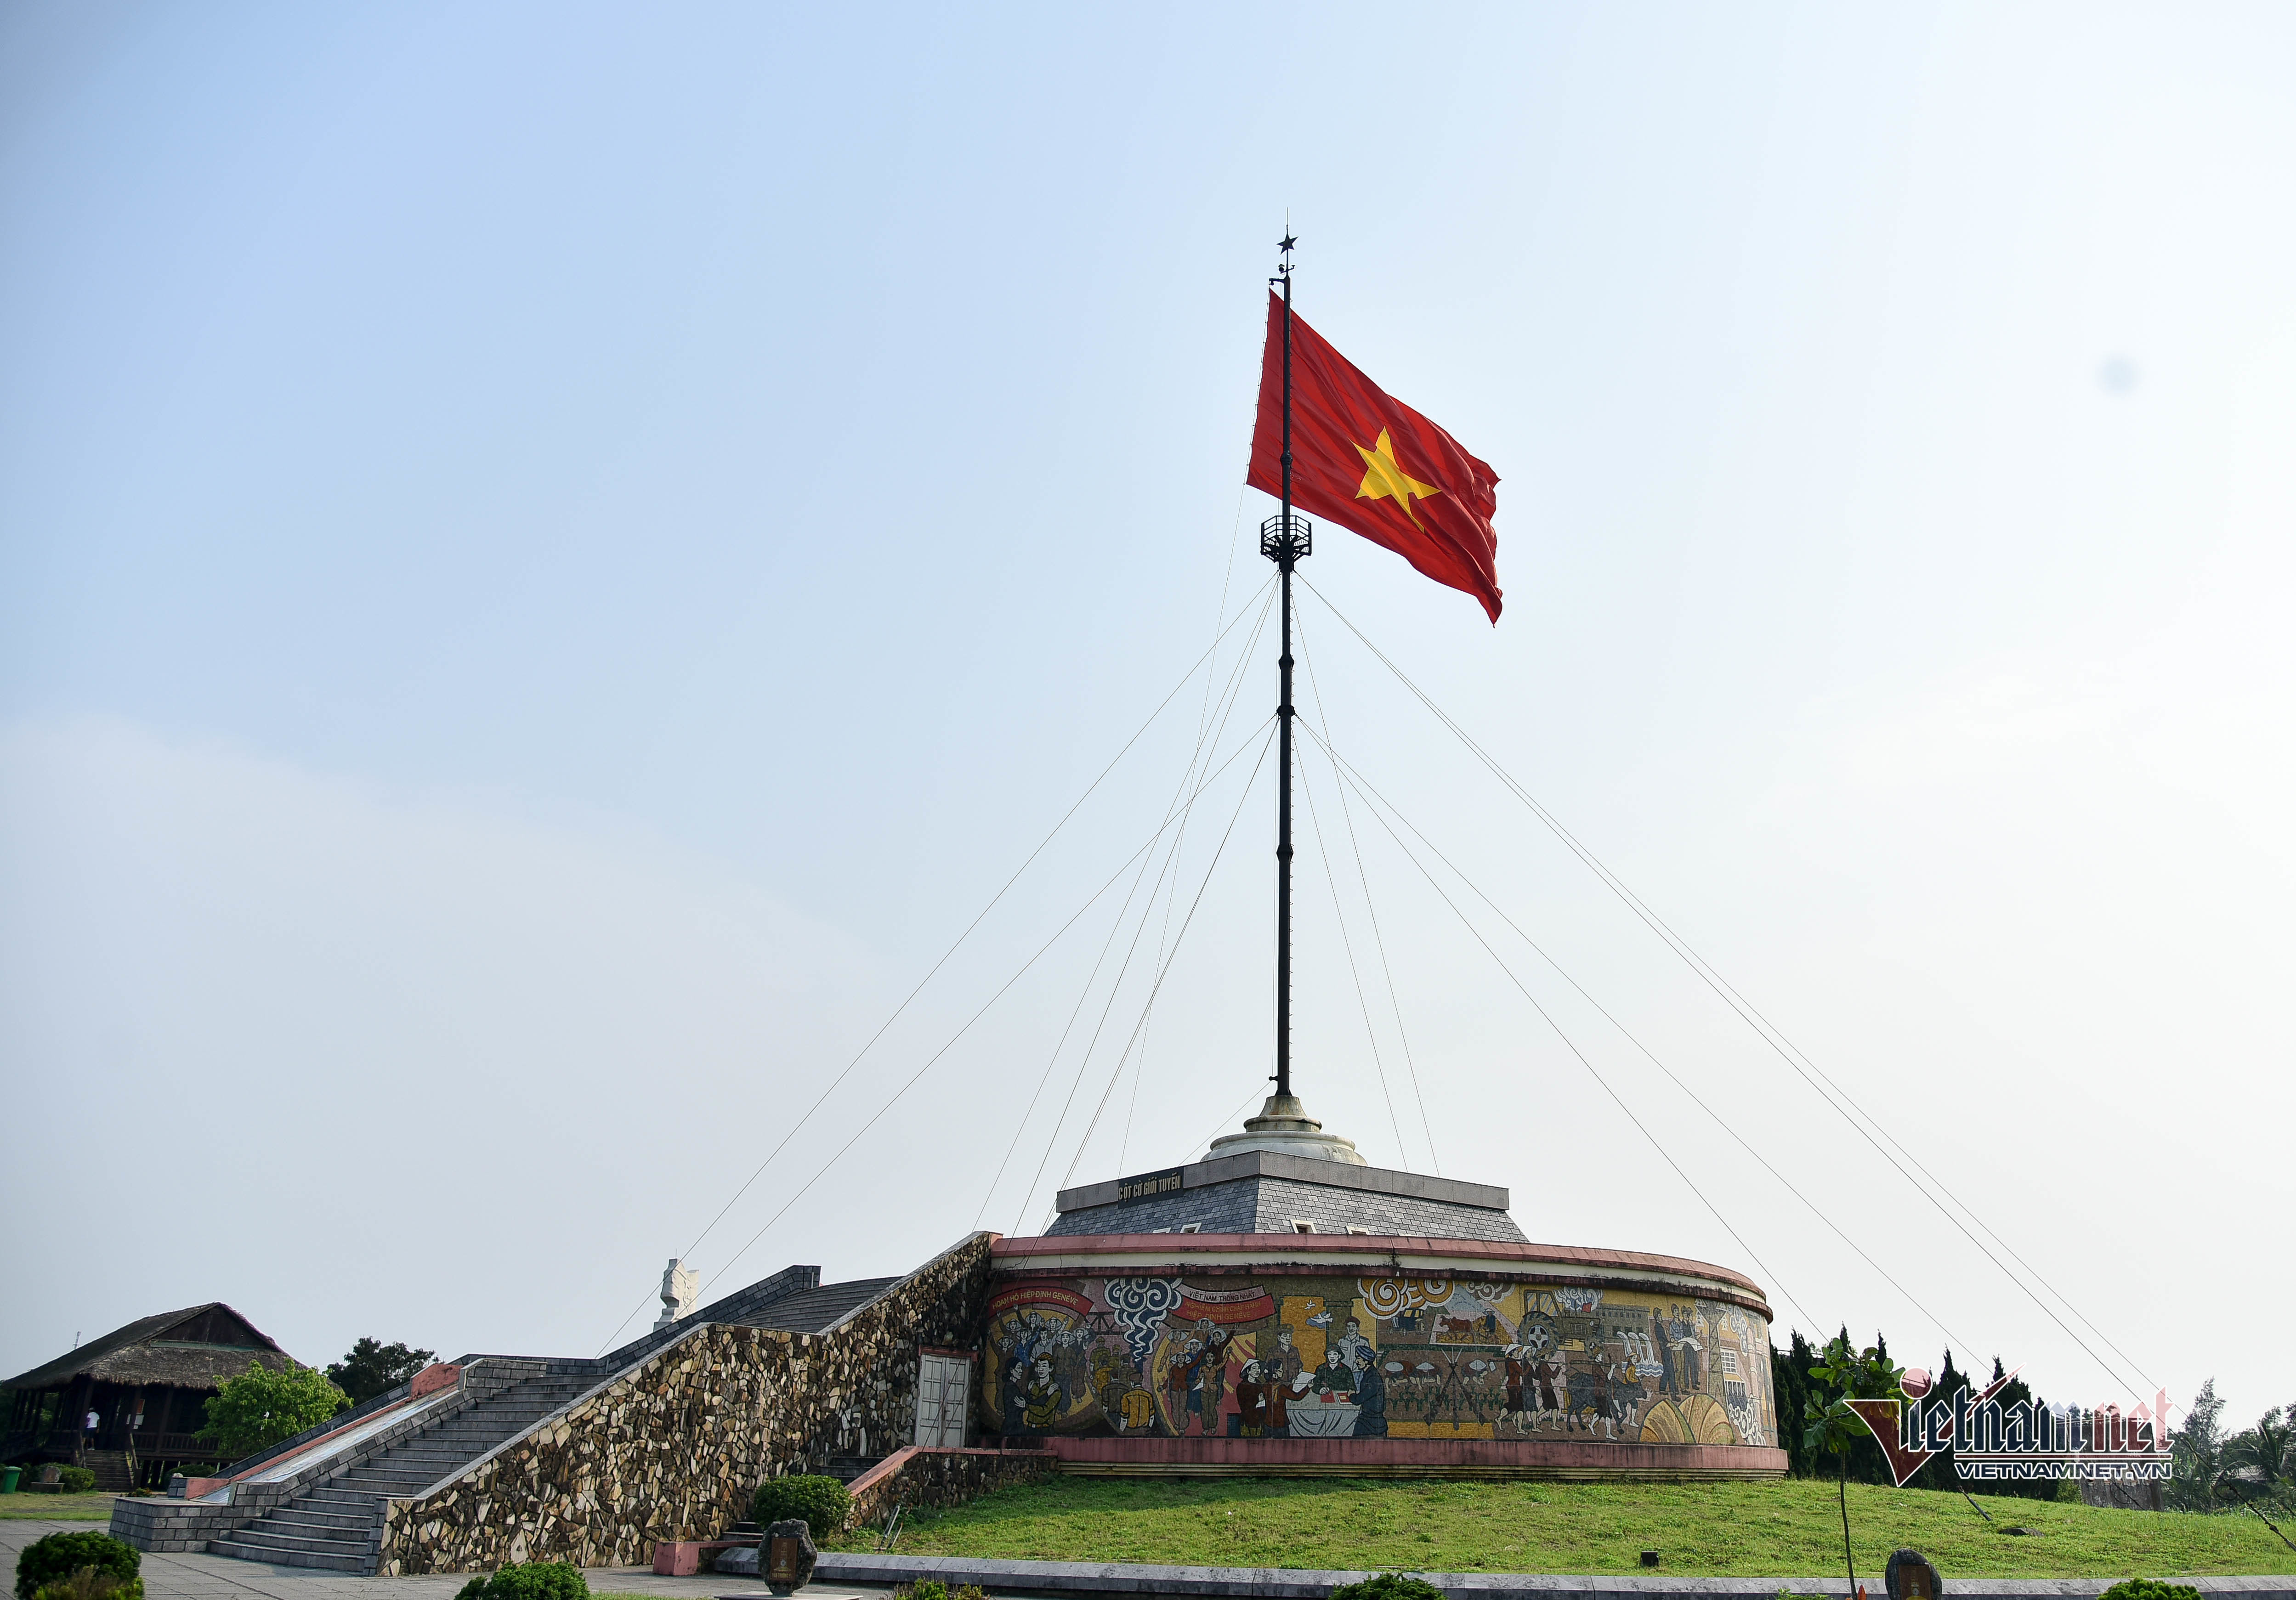 Hãy cùng nhìn vào bức ảnh về đường biên giới Hiền Lương, nơi đã diễn ra một trận chiến lịch sử giữa Việt Nam và Trung Quốc. Chúng ta có thể thấy cờ Việt Nam được treo lên cao, tôn vinh lòng yêu nước và niềm tự hào dân tộc. Hãy cùng nhau tạo ra một lá cờ Việt Nam bằng giấy để gợi nhắc lại niềm kiêu hãnh này.